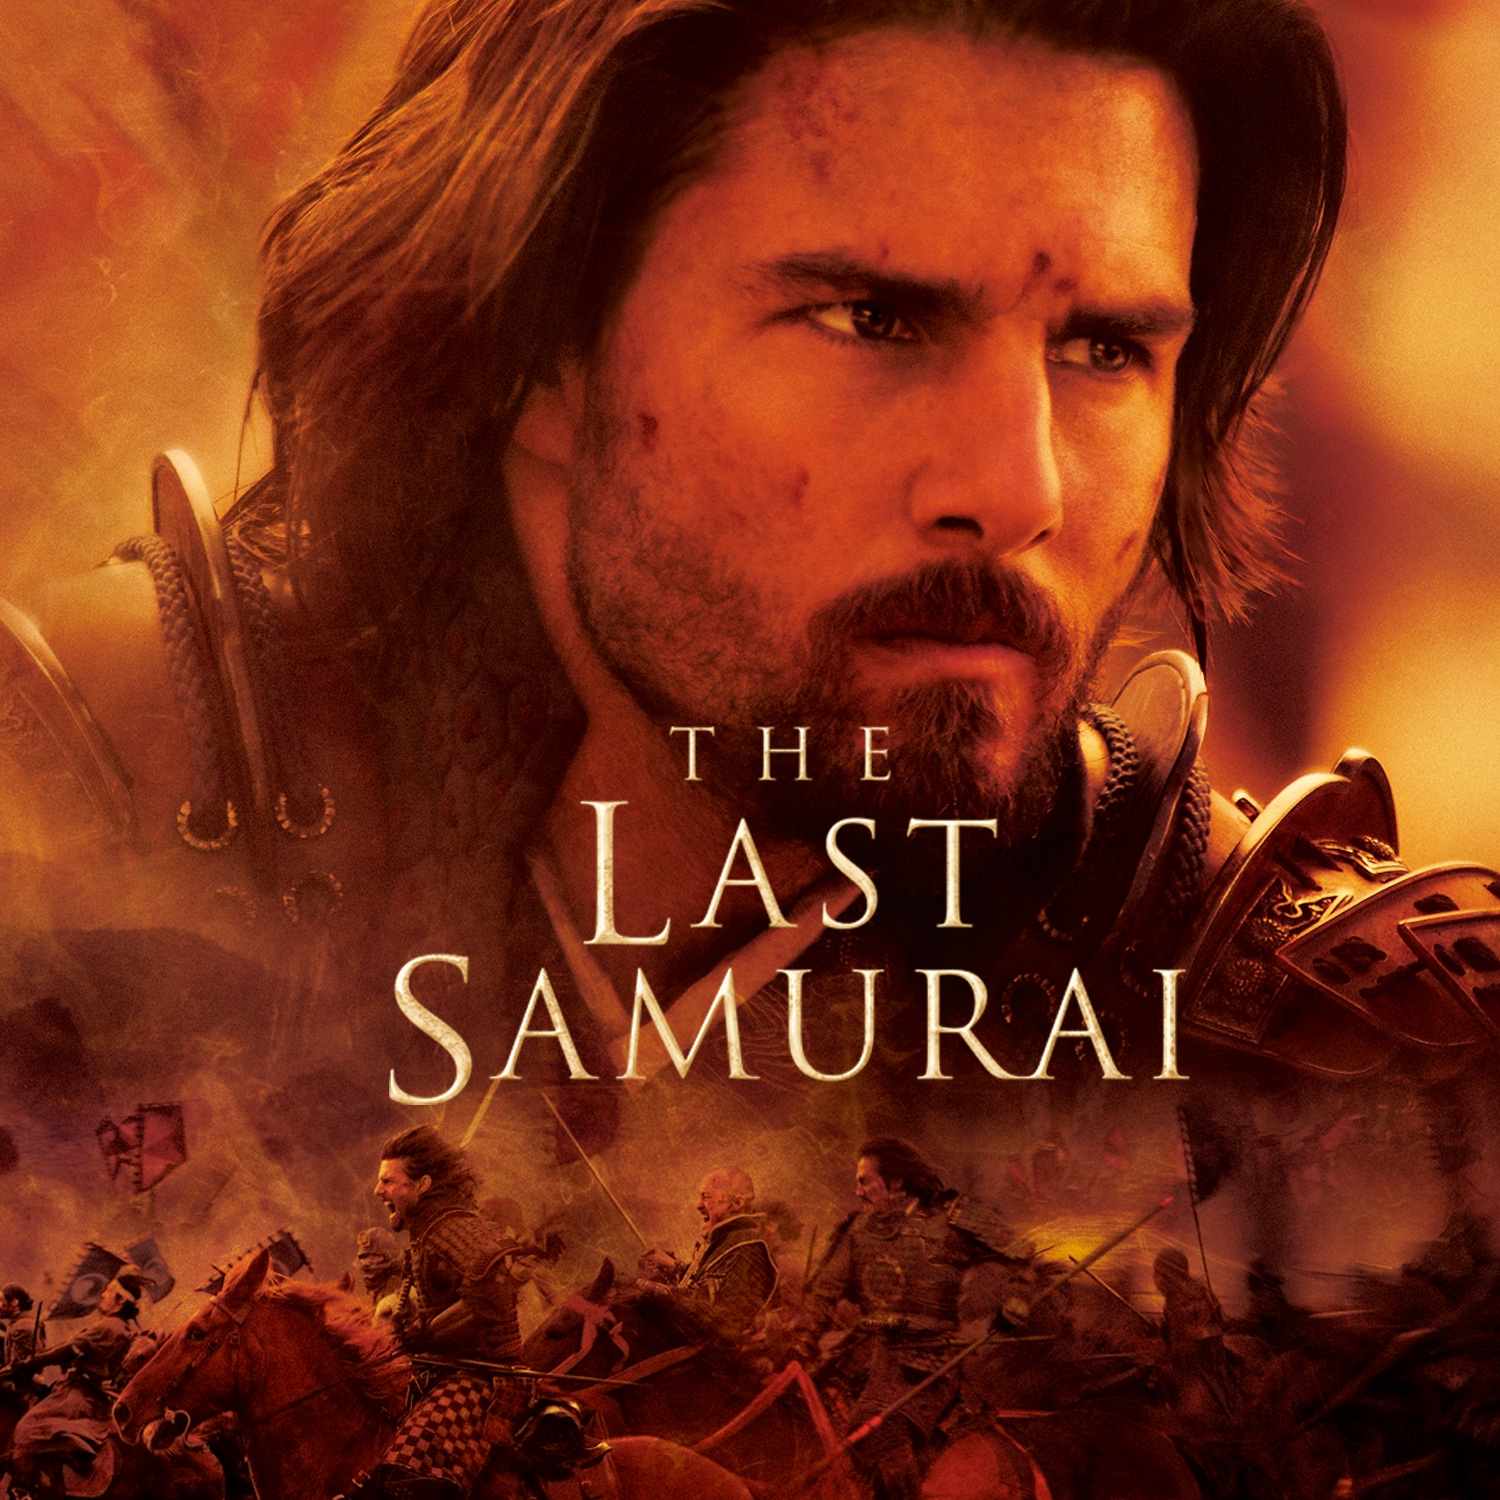 Last samurai cast